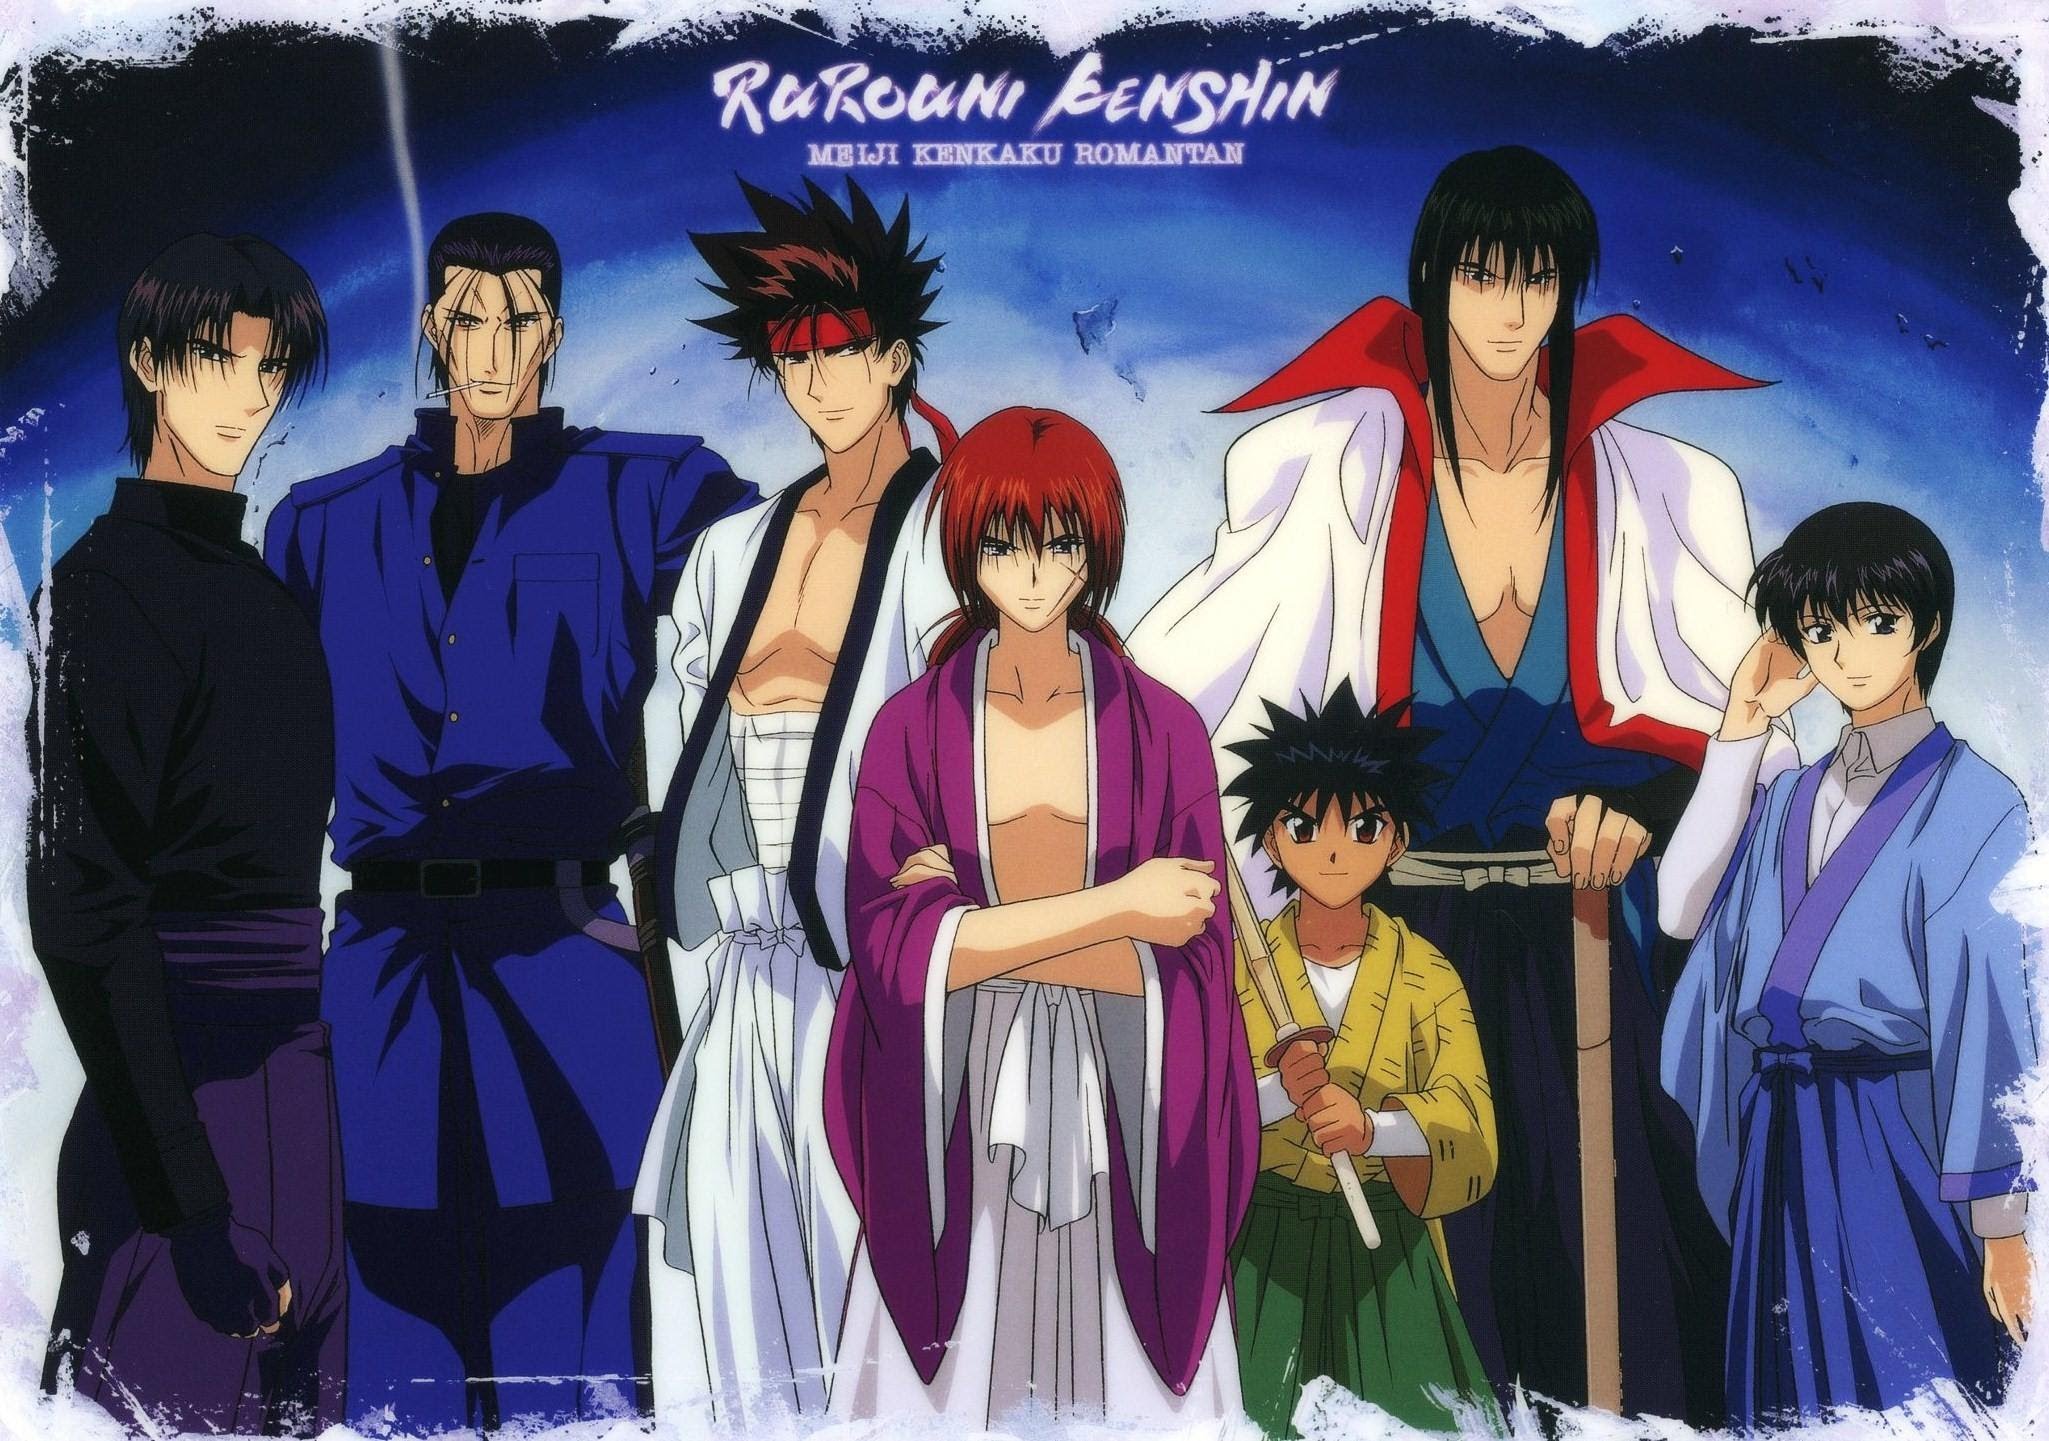 Hajime Saito, Aoshi Shinomori & Kenshin